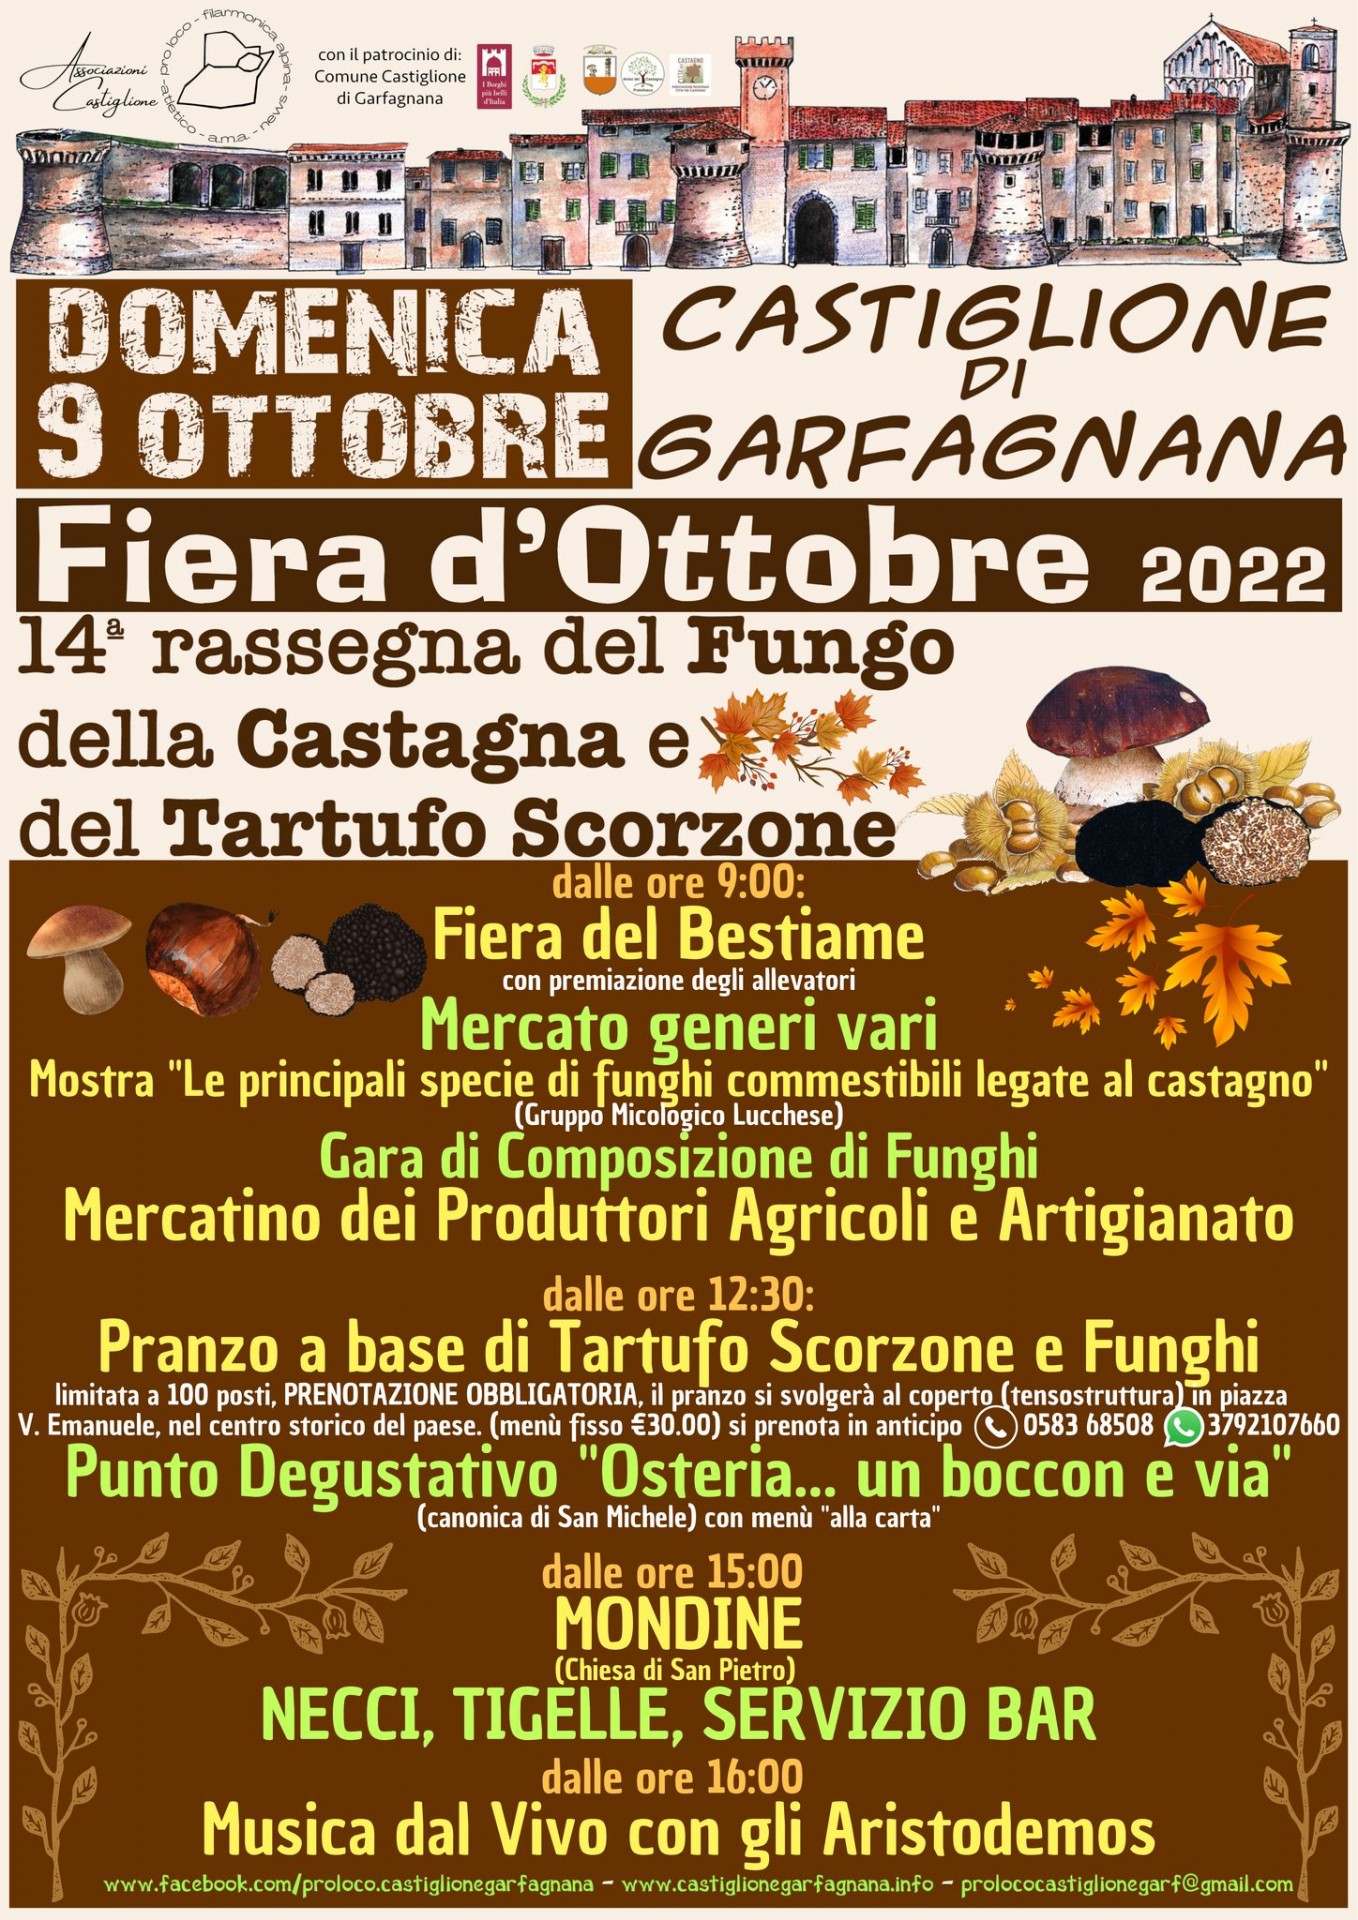 Locandina della Fiera d'Ottobre a Castiglione di Garfagnana